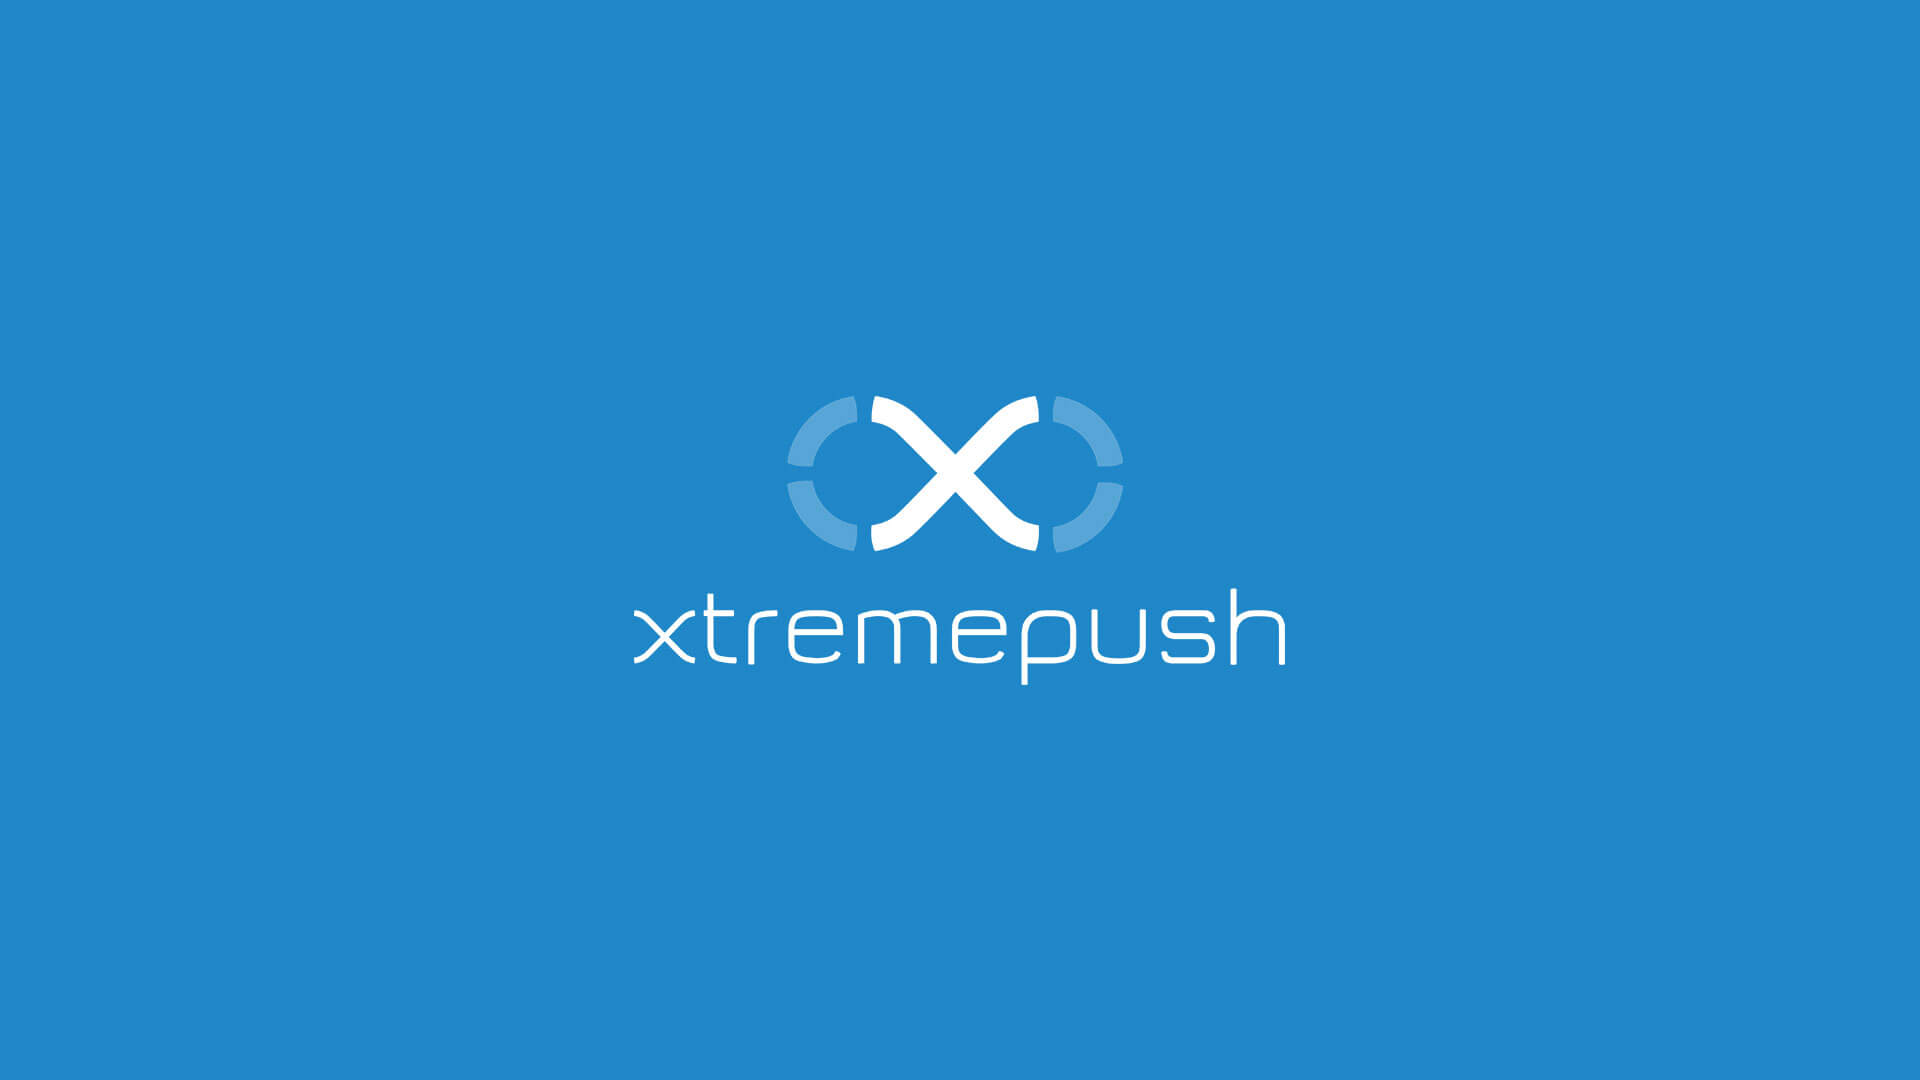 Xtremepush – Rebranding